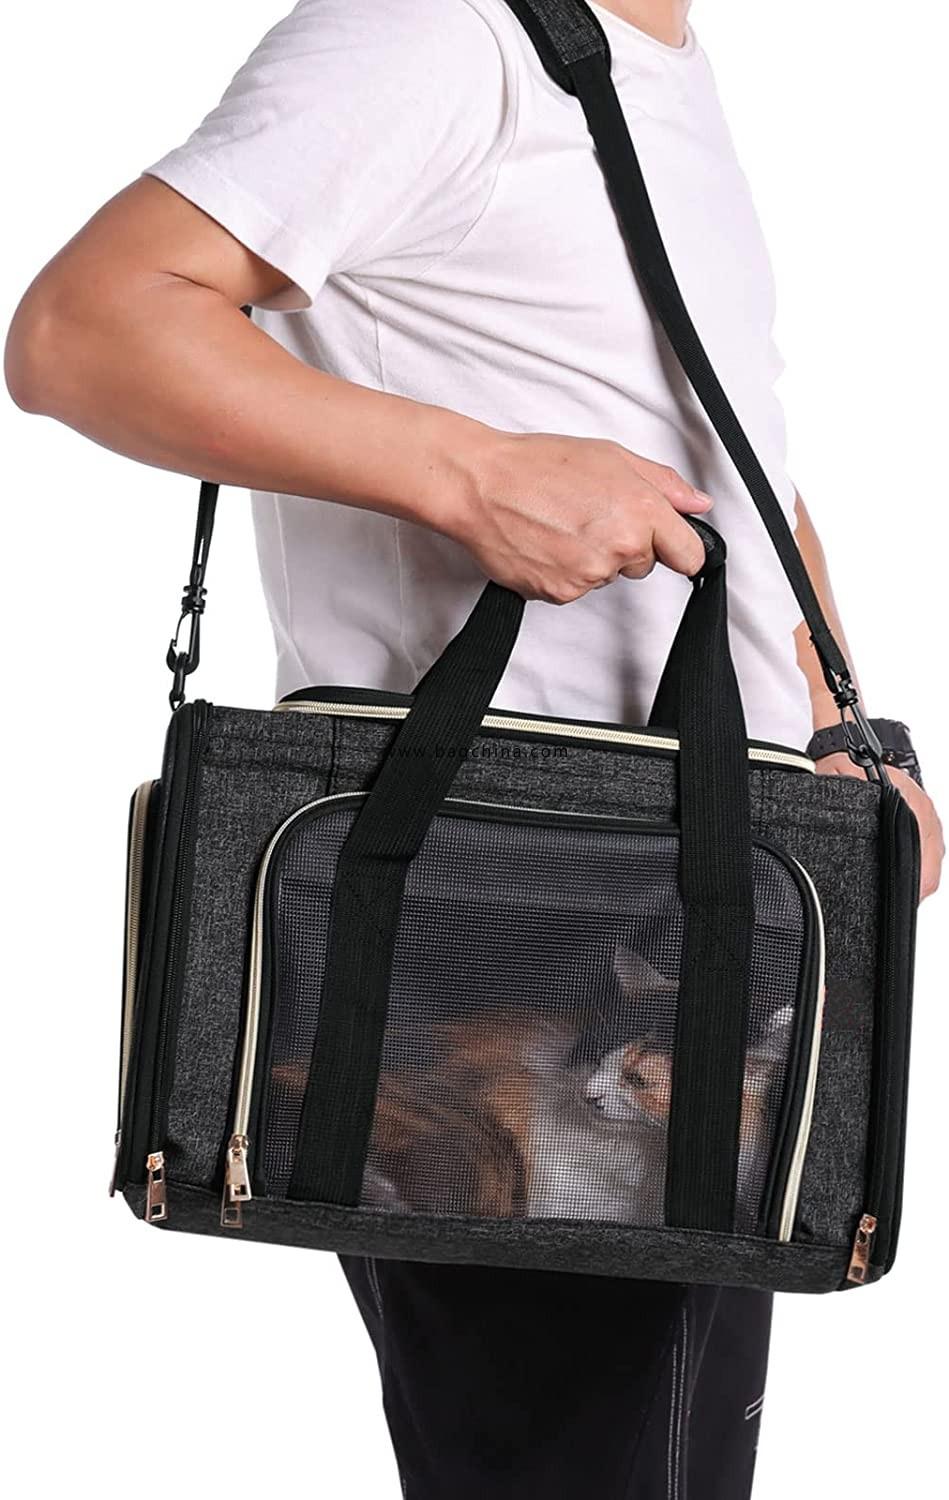 Kittens Puppy Transport Bag